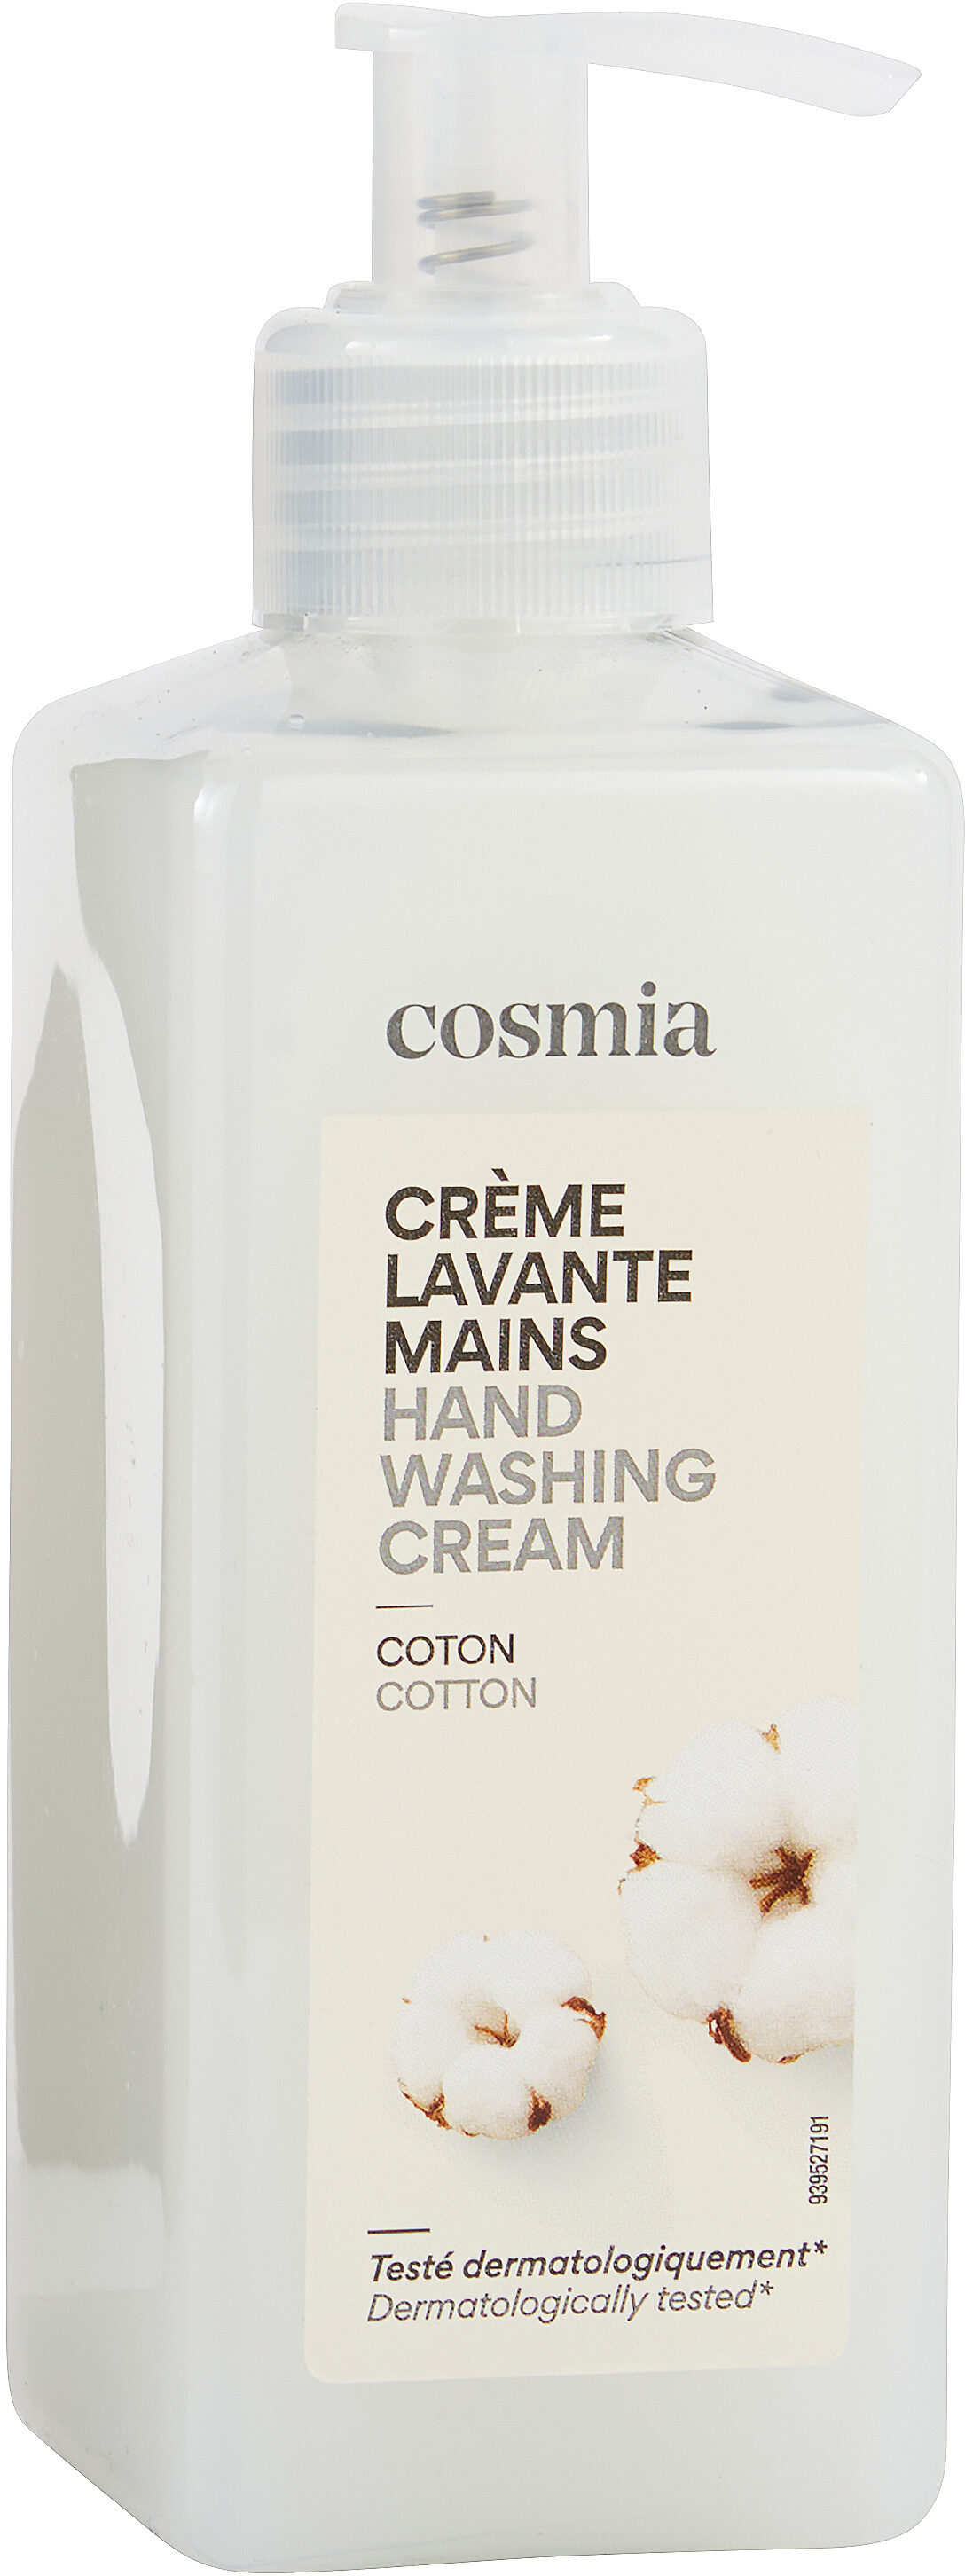 Crème lavante mains - Produkt - fr